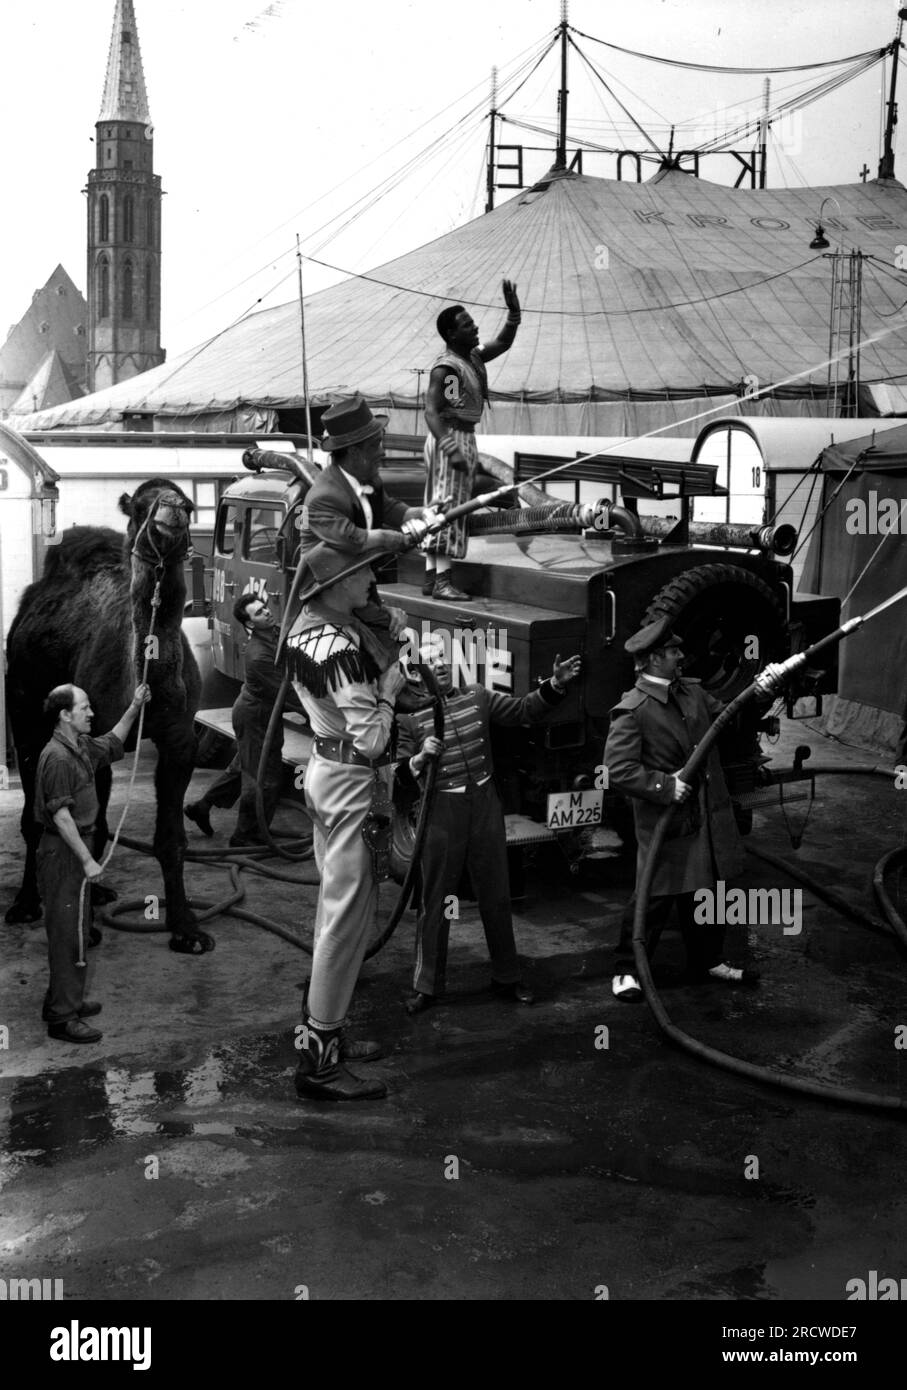 zirkus, Zirkus Krone, Mitarbeiter mit Wasserschläuchen, im Zentrum: Erhard 'Bimbo' Weller, 1960er, ADDITIONAL-RIGHTS-CLEARANCE-INFO-NOT-AVAILABLE Stockfoto